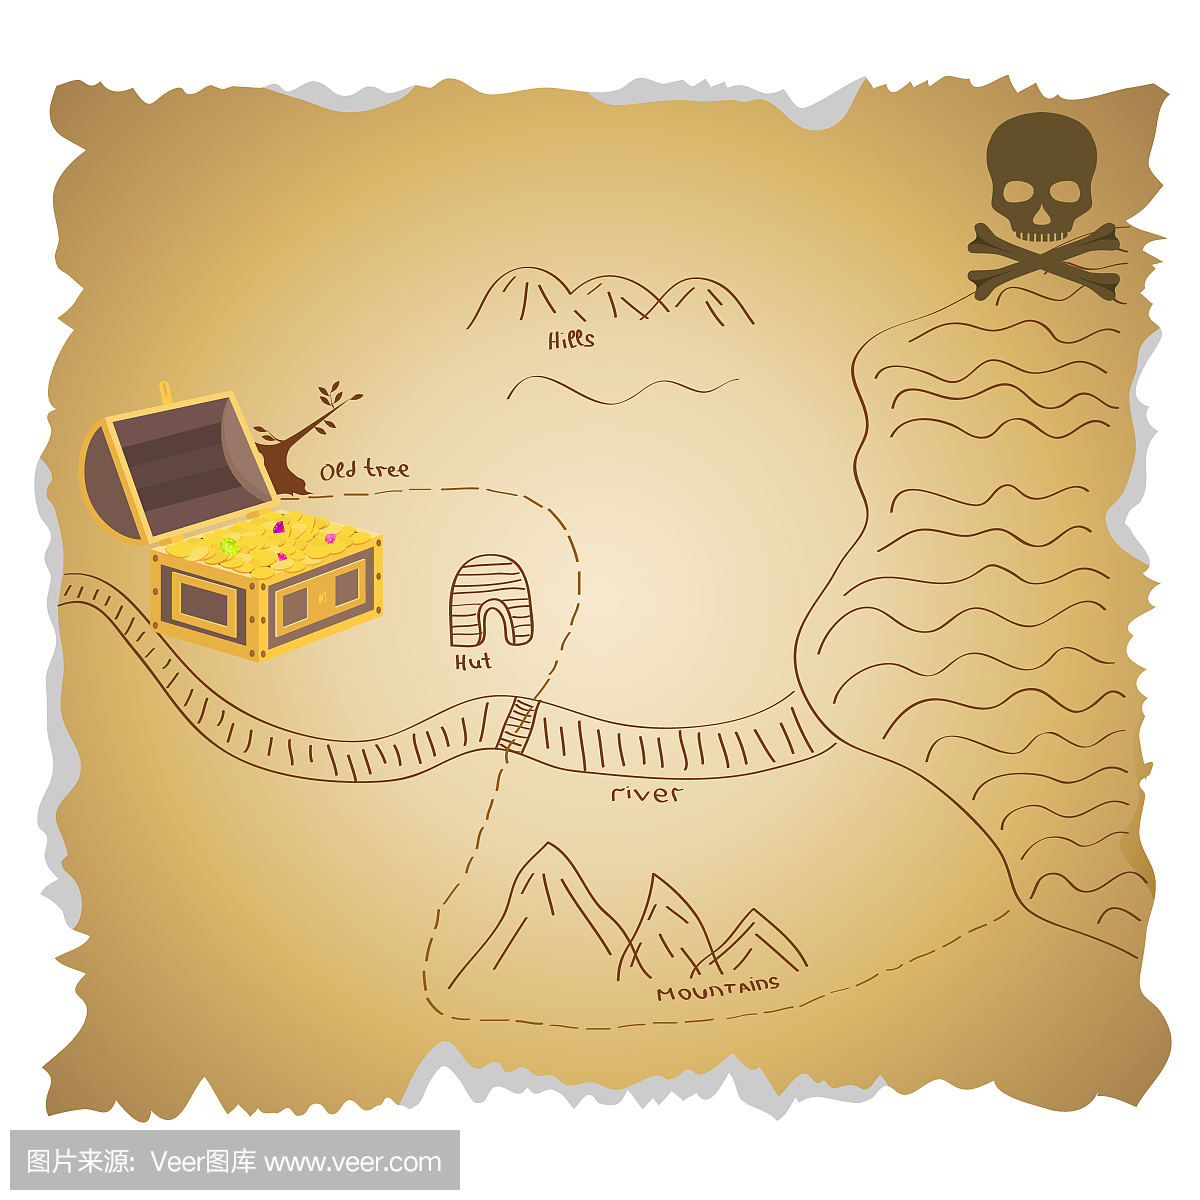 海盗珍宝与宝藏的地图。一张古老的海盗宝藏地